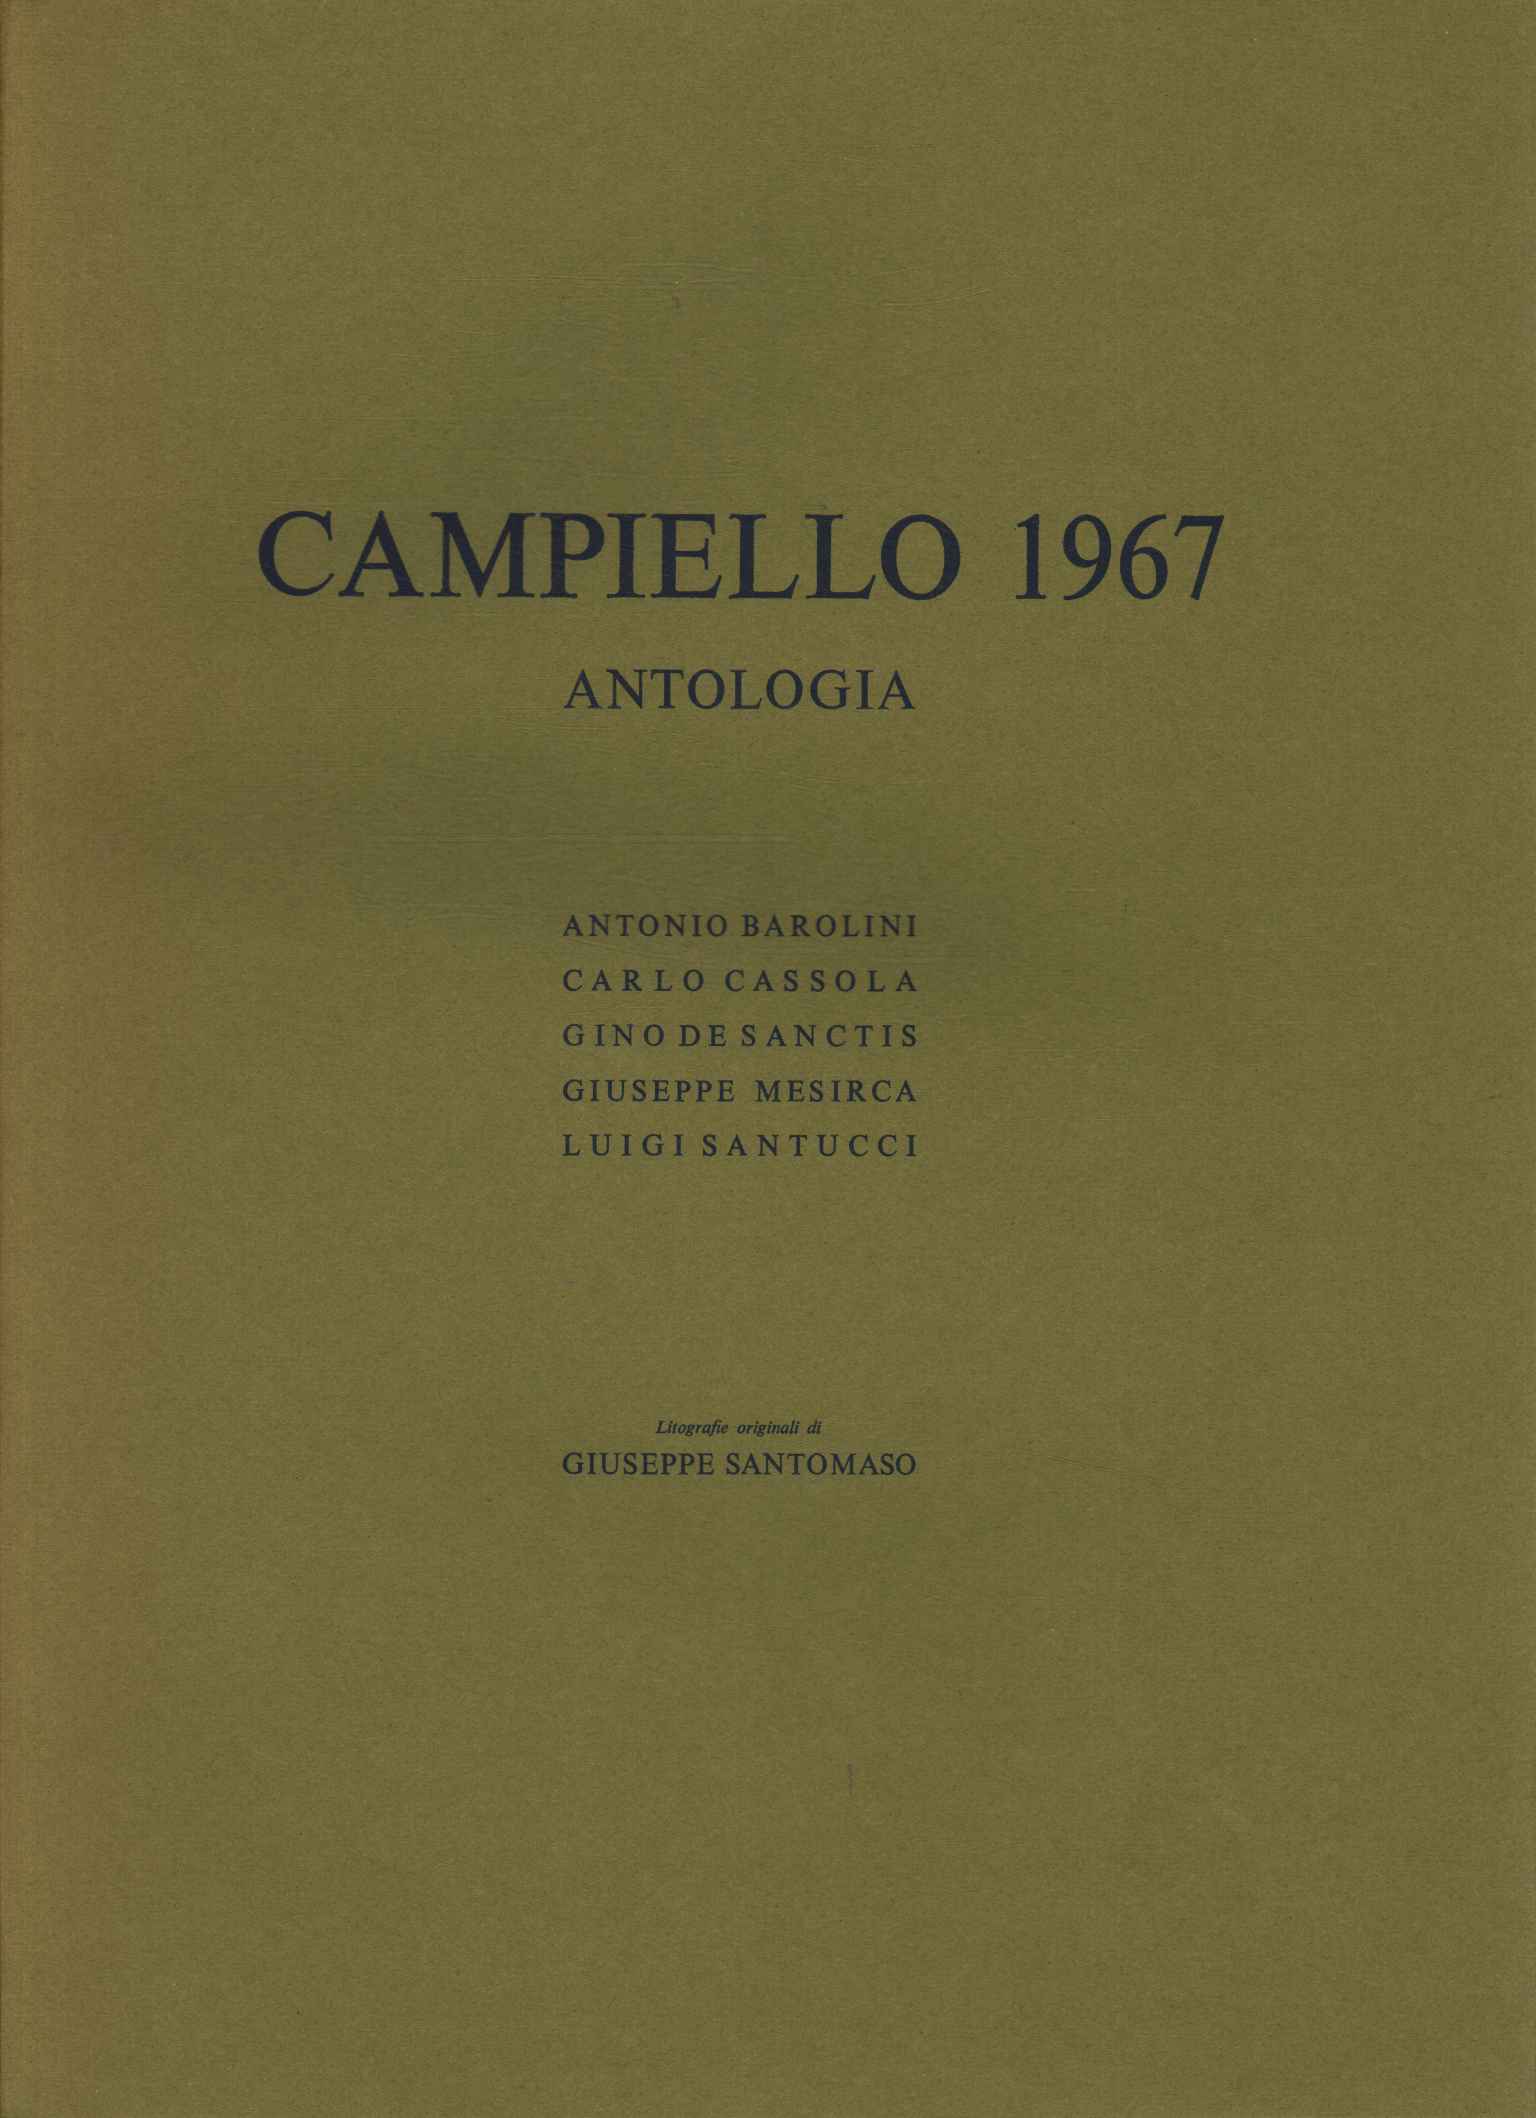 Antologia del Campiello 1967 - AA.VV. (s.e.) [1967]